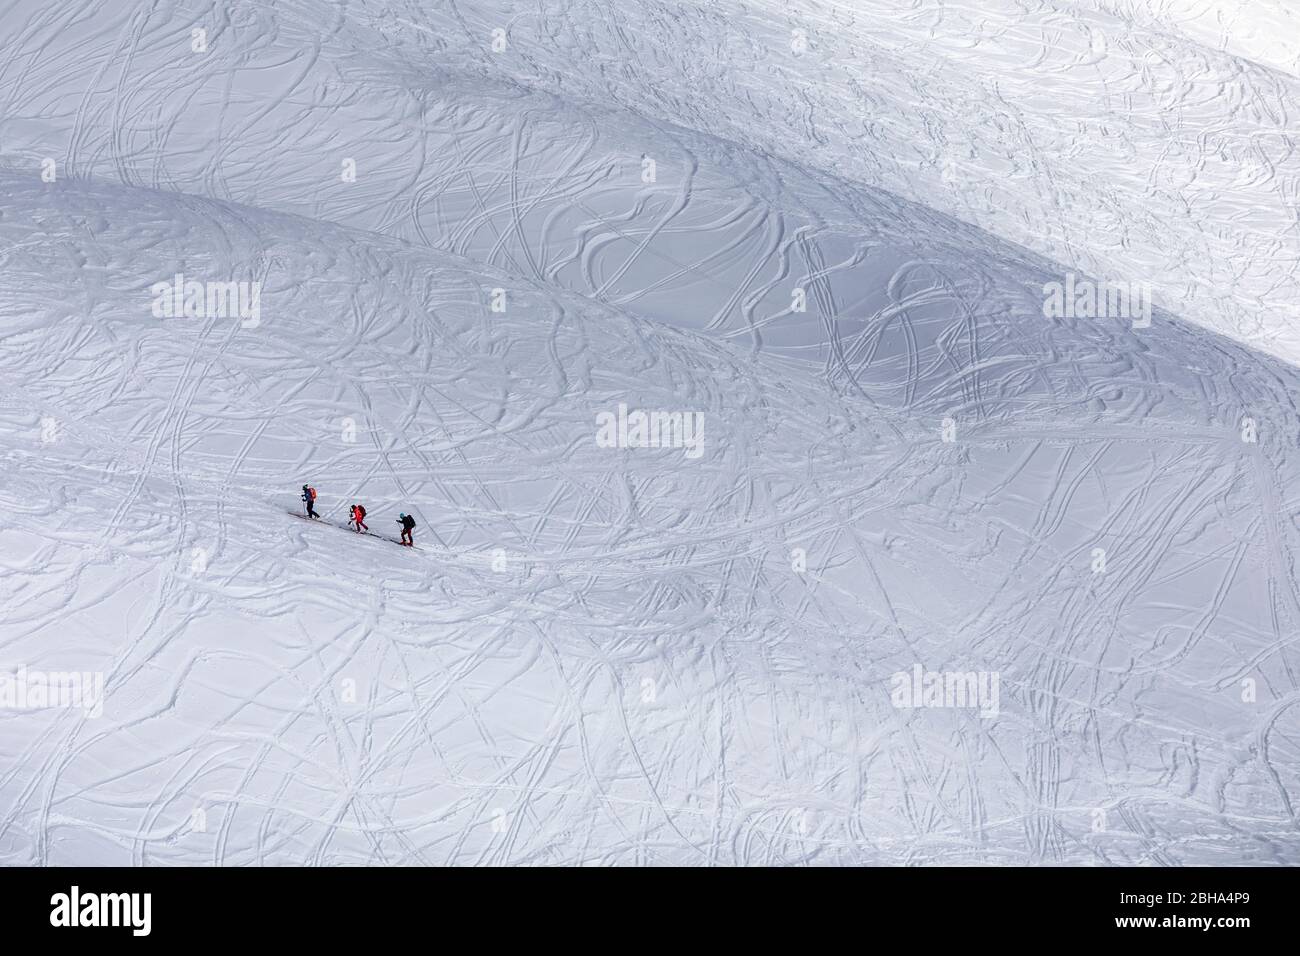 Trois alpinistes de ski s'accrochés sur la neige dessinée par les pistes de ski, Monte Alto (High Man), Hohe Tauern, Casies Valley / Gsieser Valley, Tyrol du Sud, Italie Banque D'Images